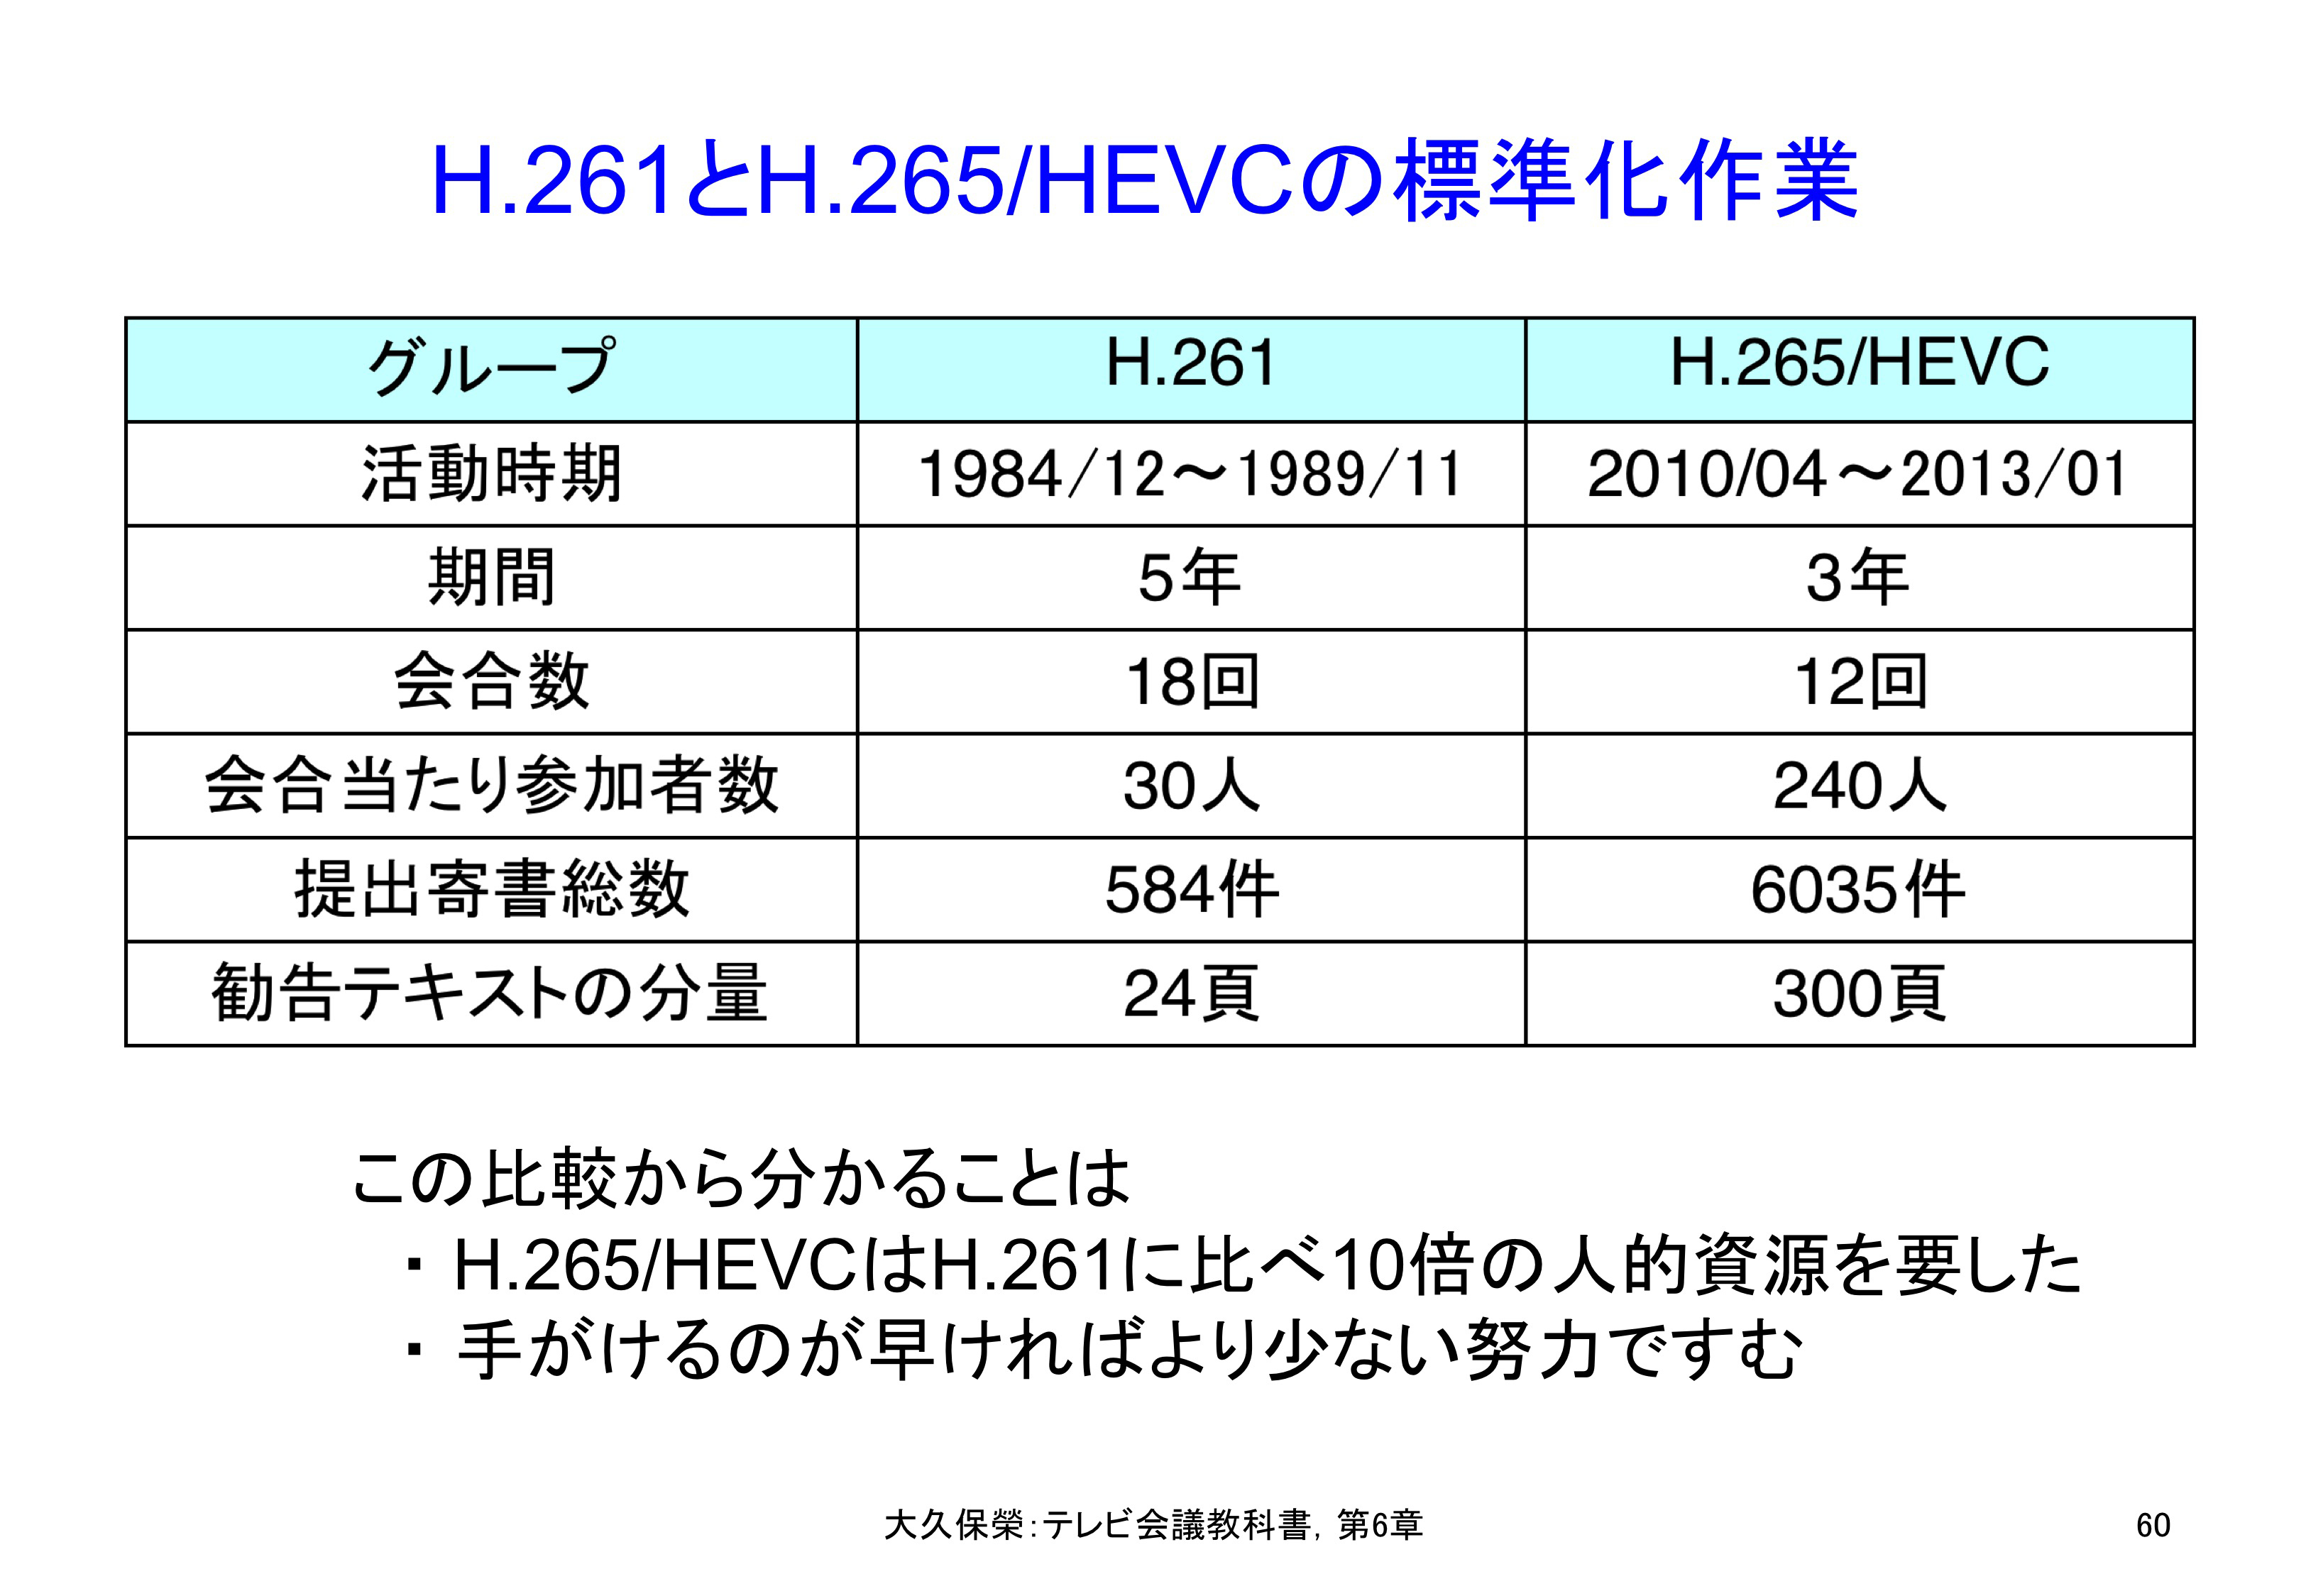 図C6-7 H.261とH.265/HEVCの標準化作業